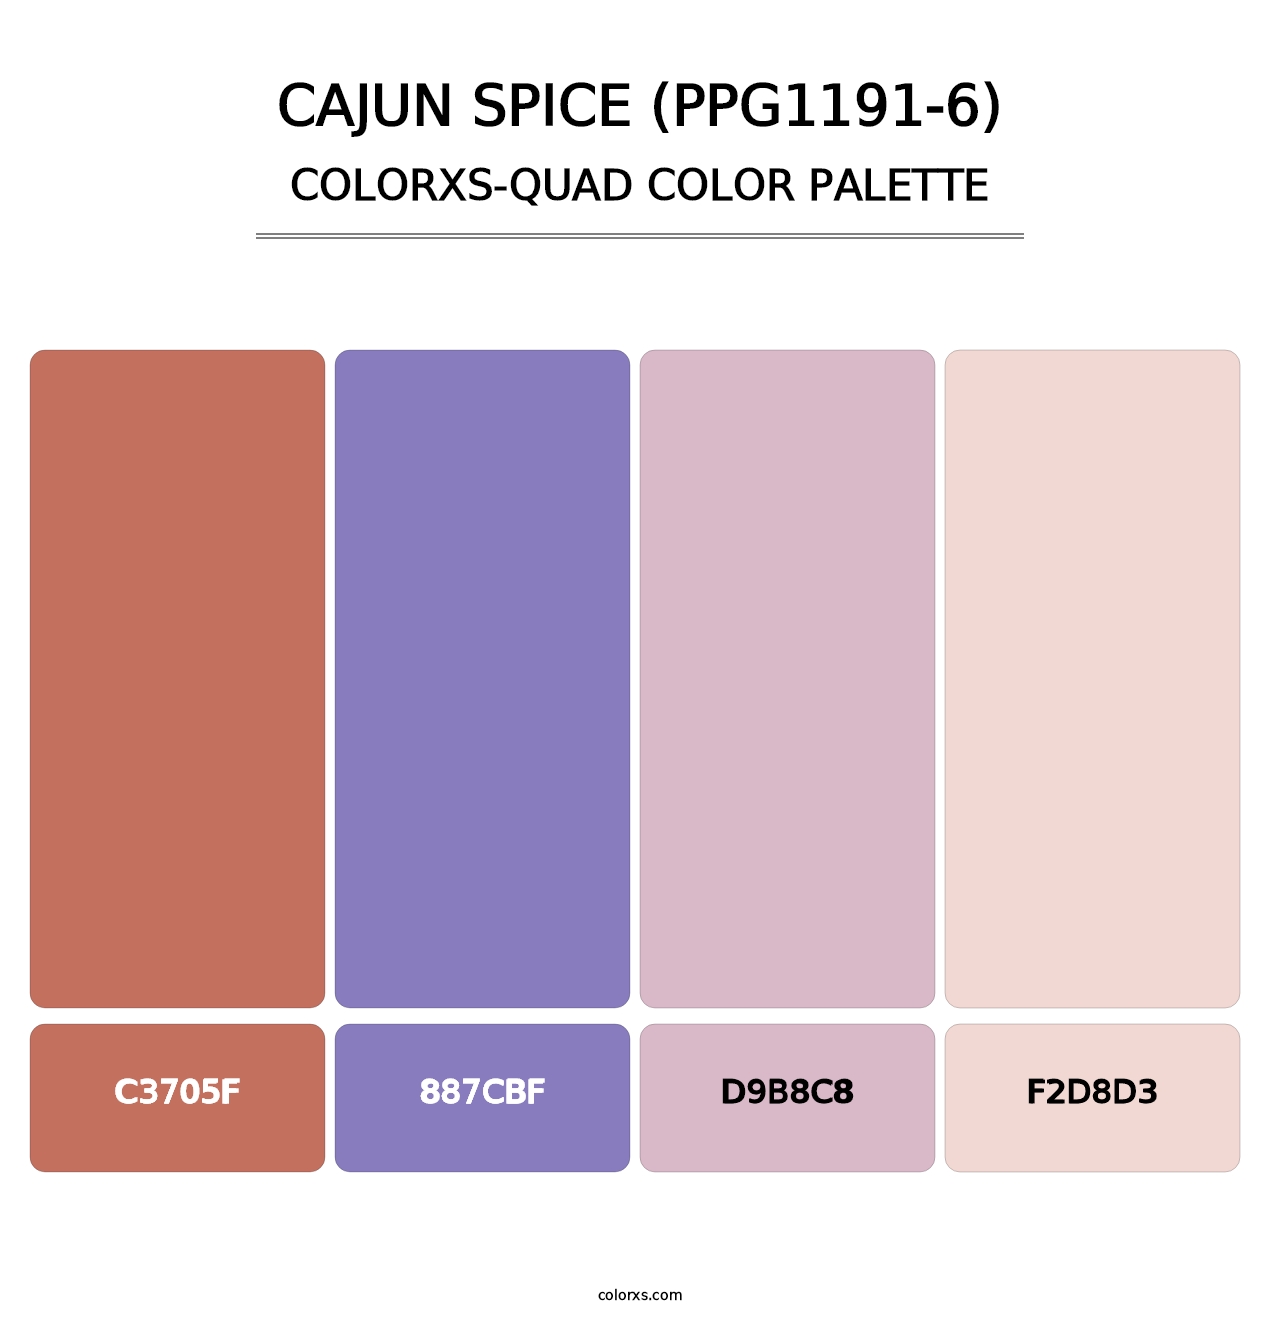 Cajun Spice (PPG1191-6) - Colorxs Quad Palette